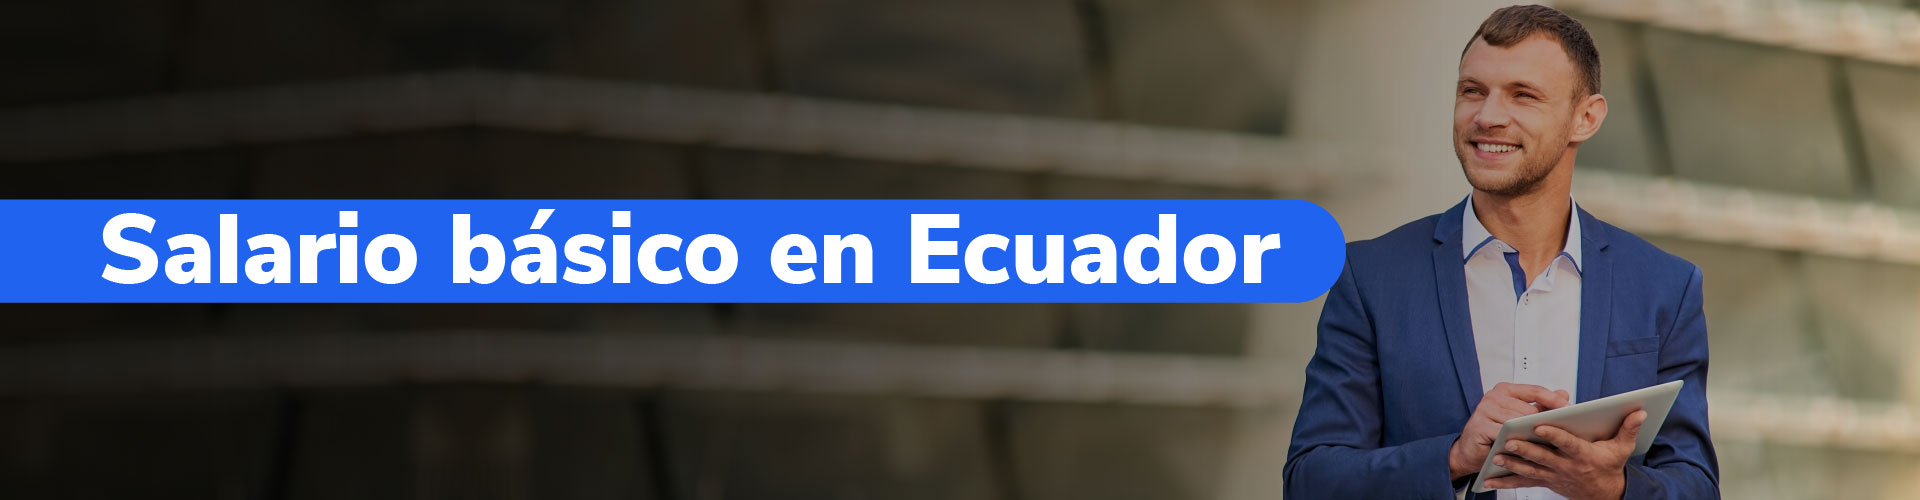 Salario básico unificado en Ecuador